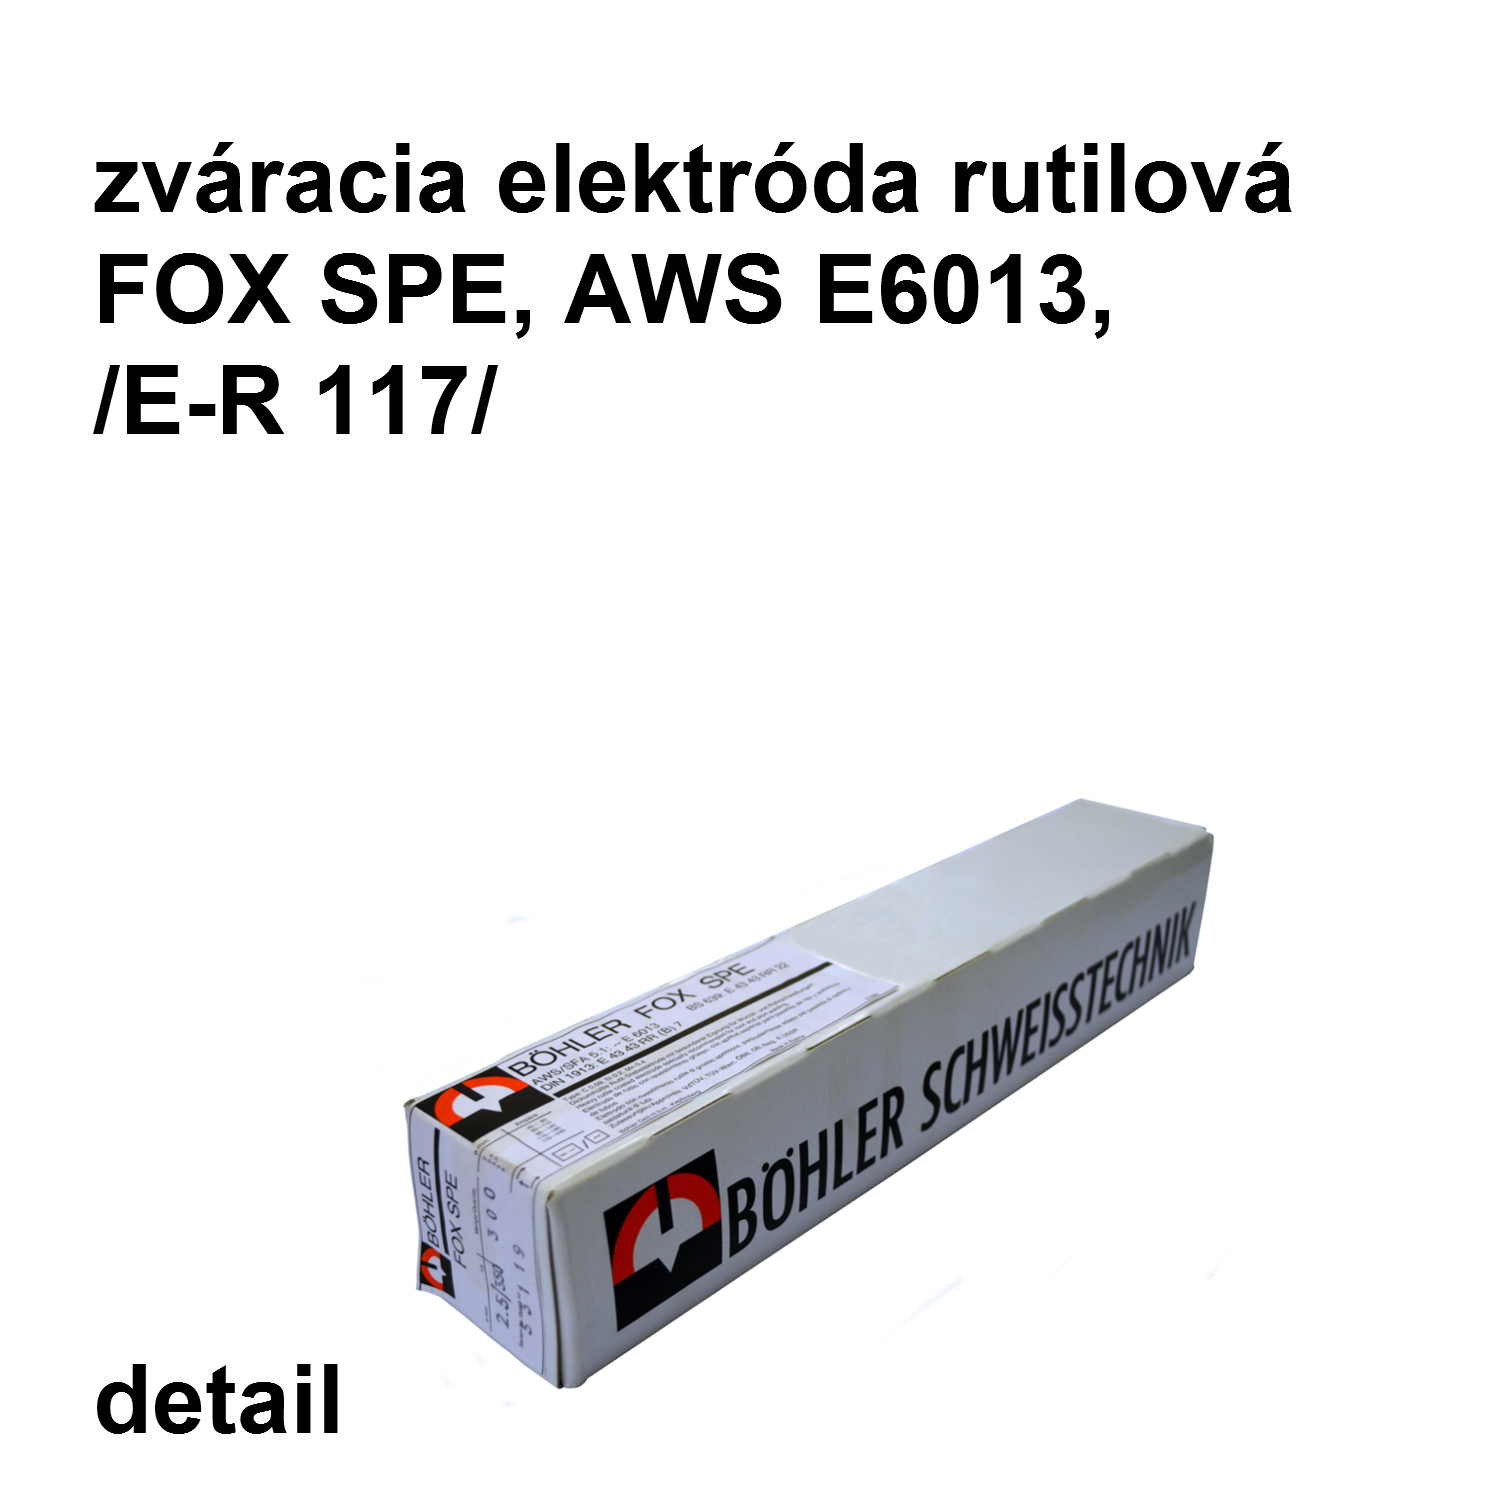 zváracia elektróda FOX SPE  2,5/350 mm, AWS E6013 /E-R117/ rutilová elektróda   